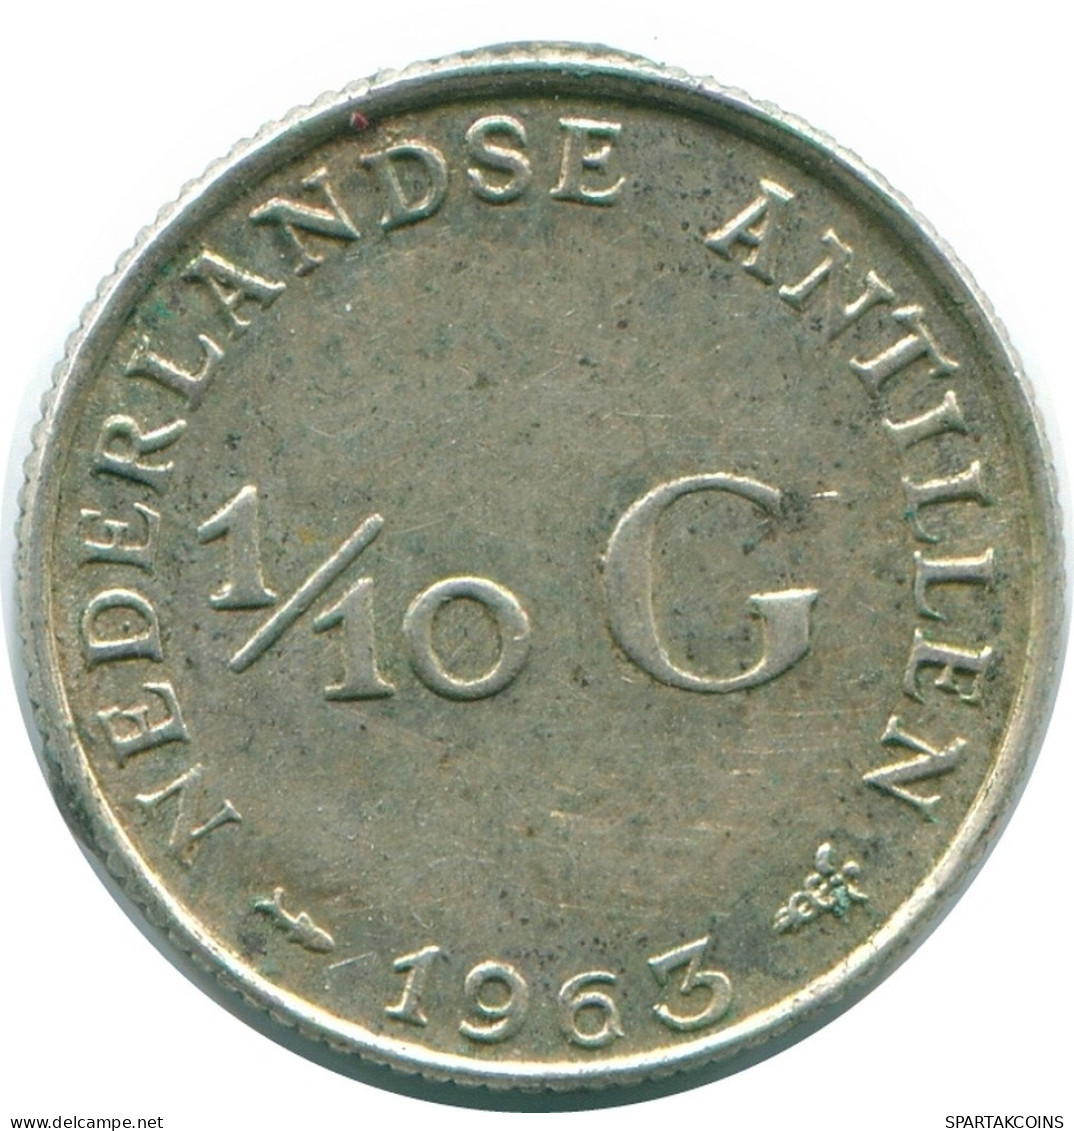 1/10 GULDEN 1963 NIEDERLÄNDISCHE ANTILLEN SILBER Koloniale Münze #NL12644.3.D.A - Niederländische Antillen